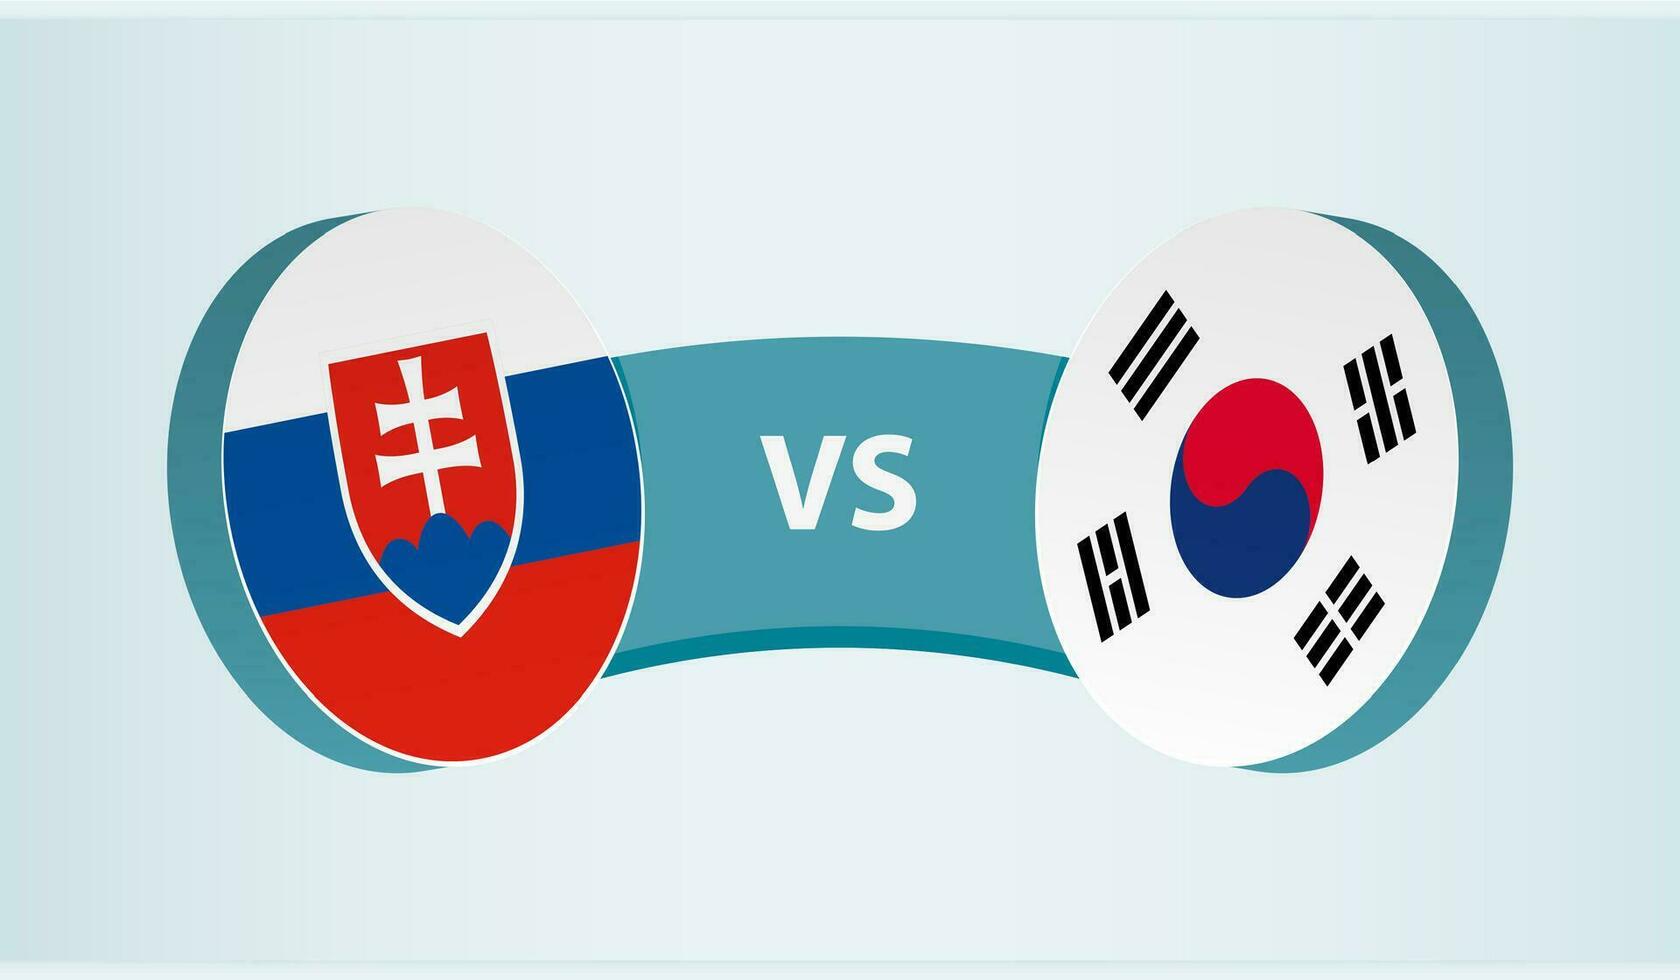 slovakia mot söder korea, team sporter konkurrens begrepp. vektor